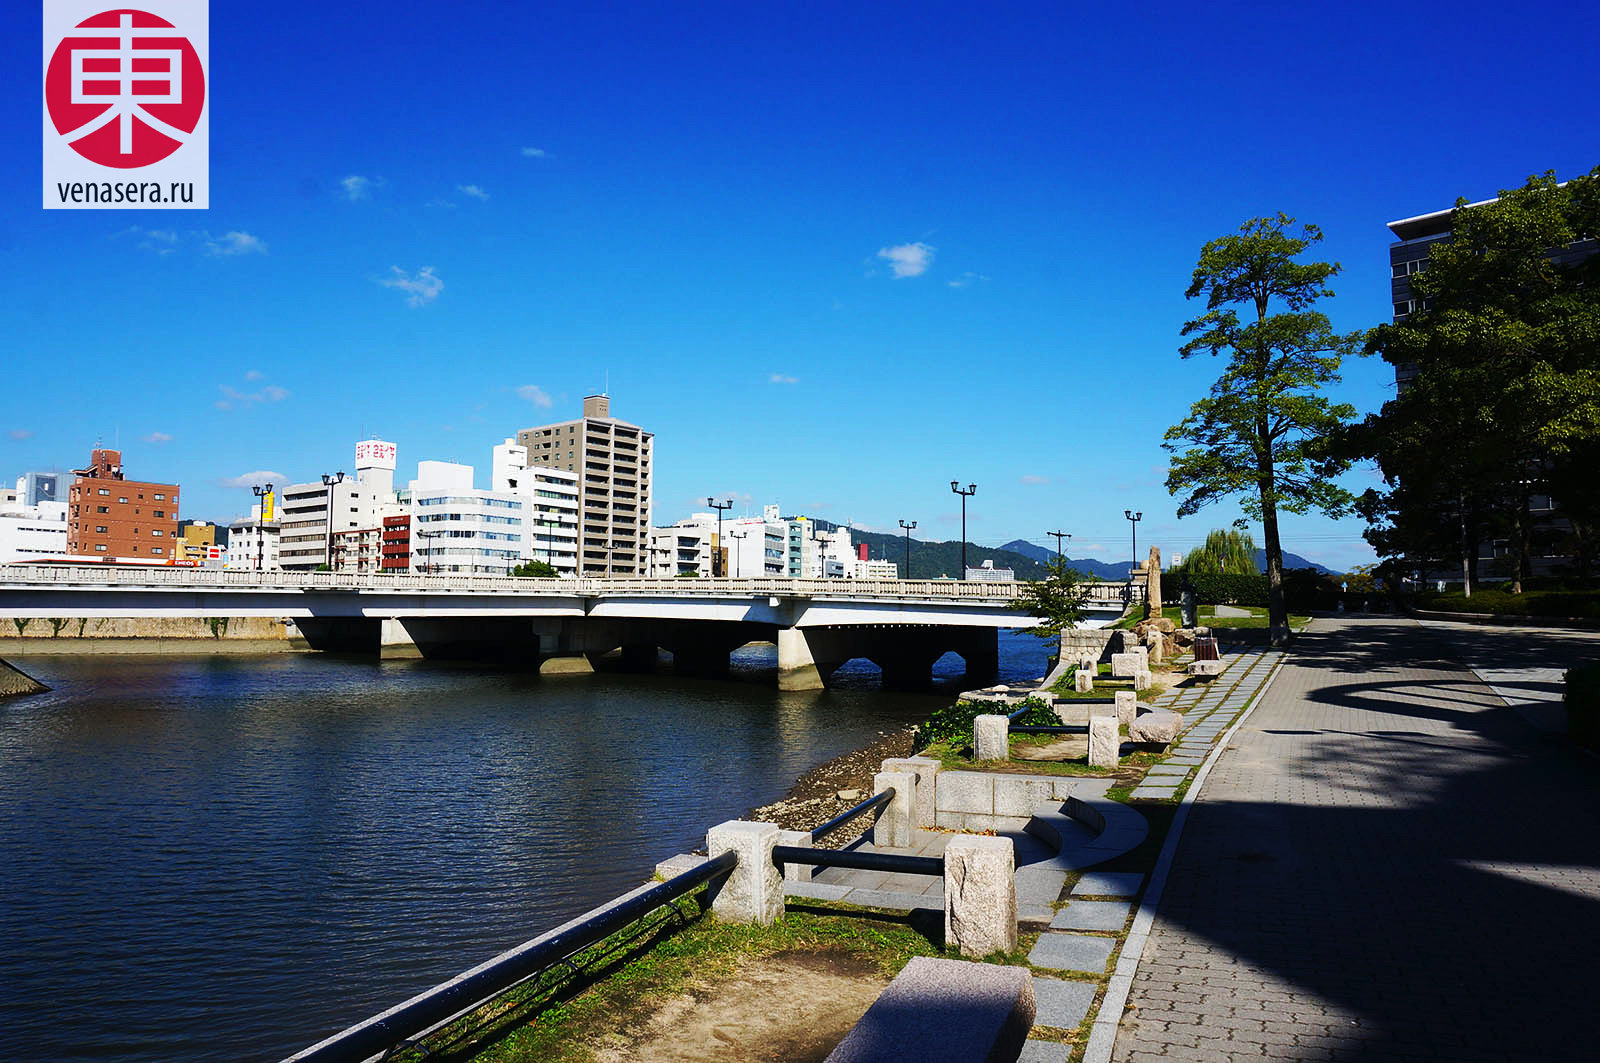 Мост Айой, Aioi Bridge, 相生橋, Хиросима, Hiroshima, 広島, Хонсю, Honshu, 本州, Япония, Japan, 日本.